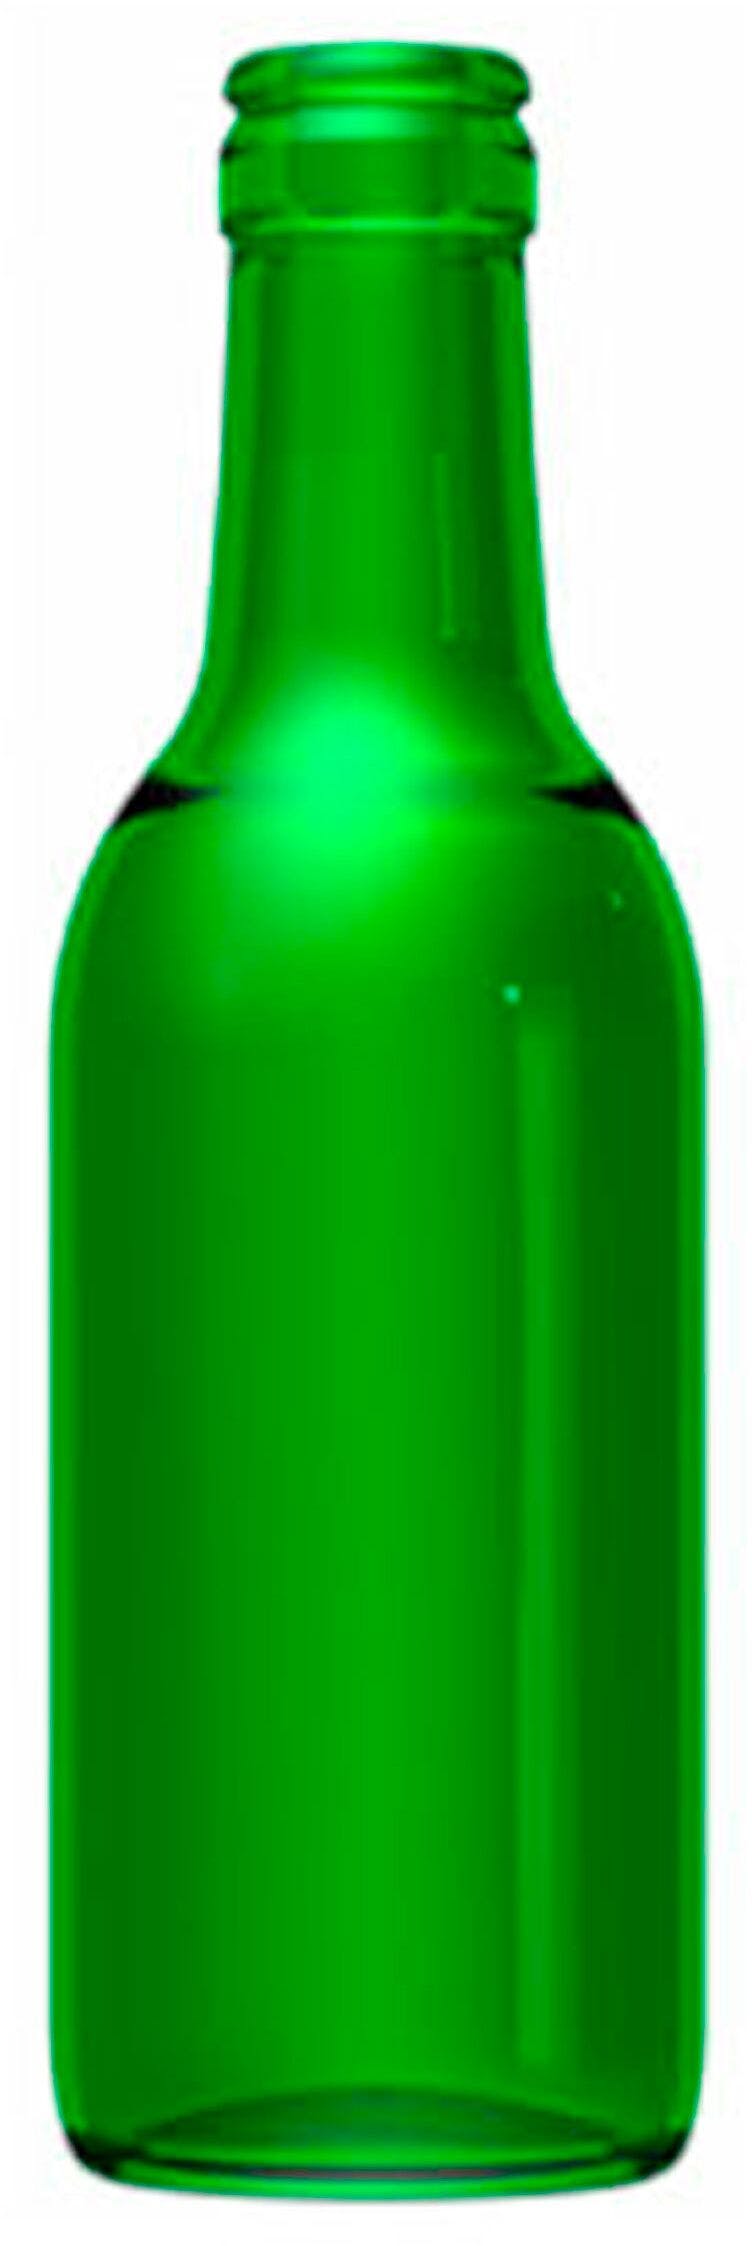 Bottiglia bordolese   STD 250 ml BG-Vite